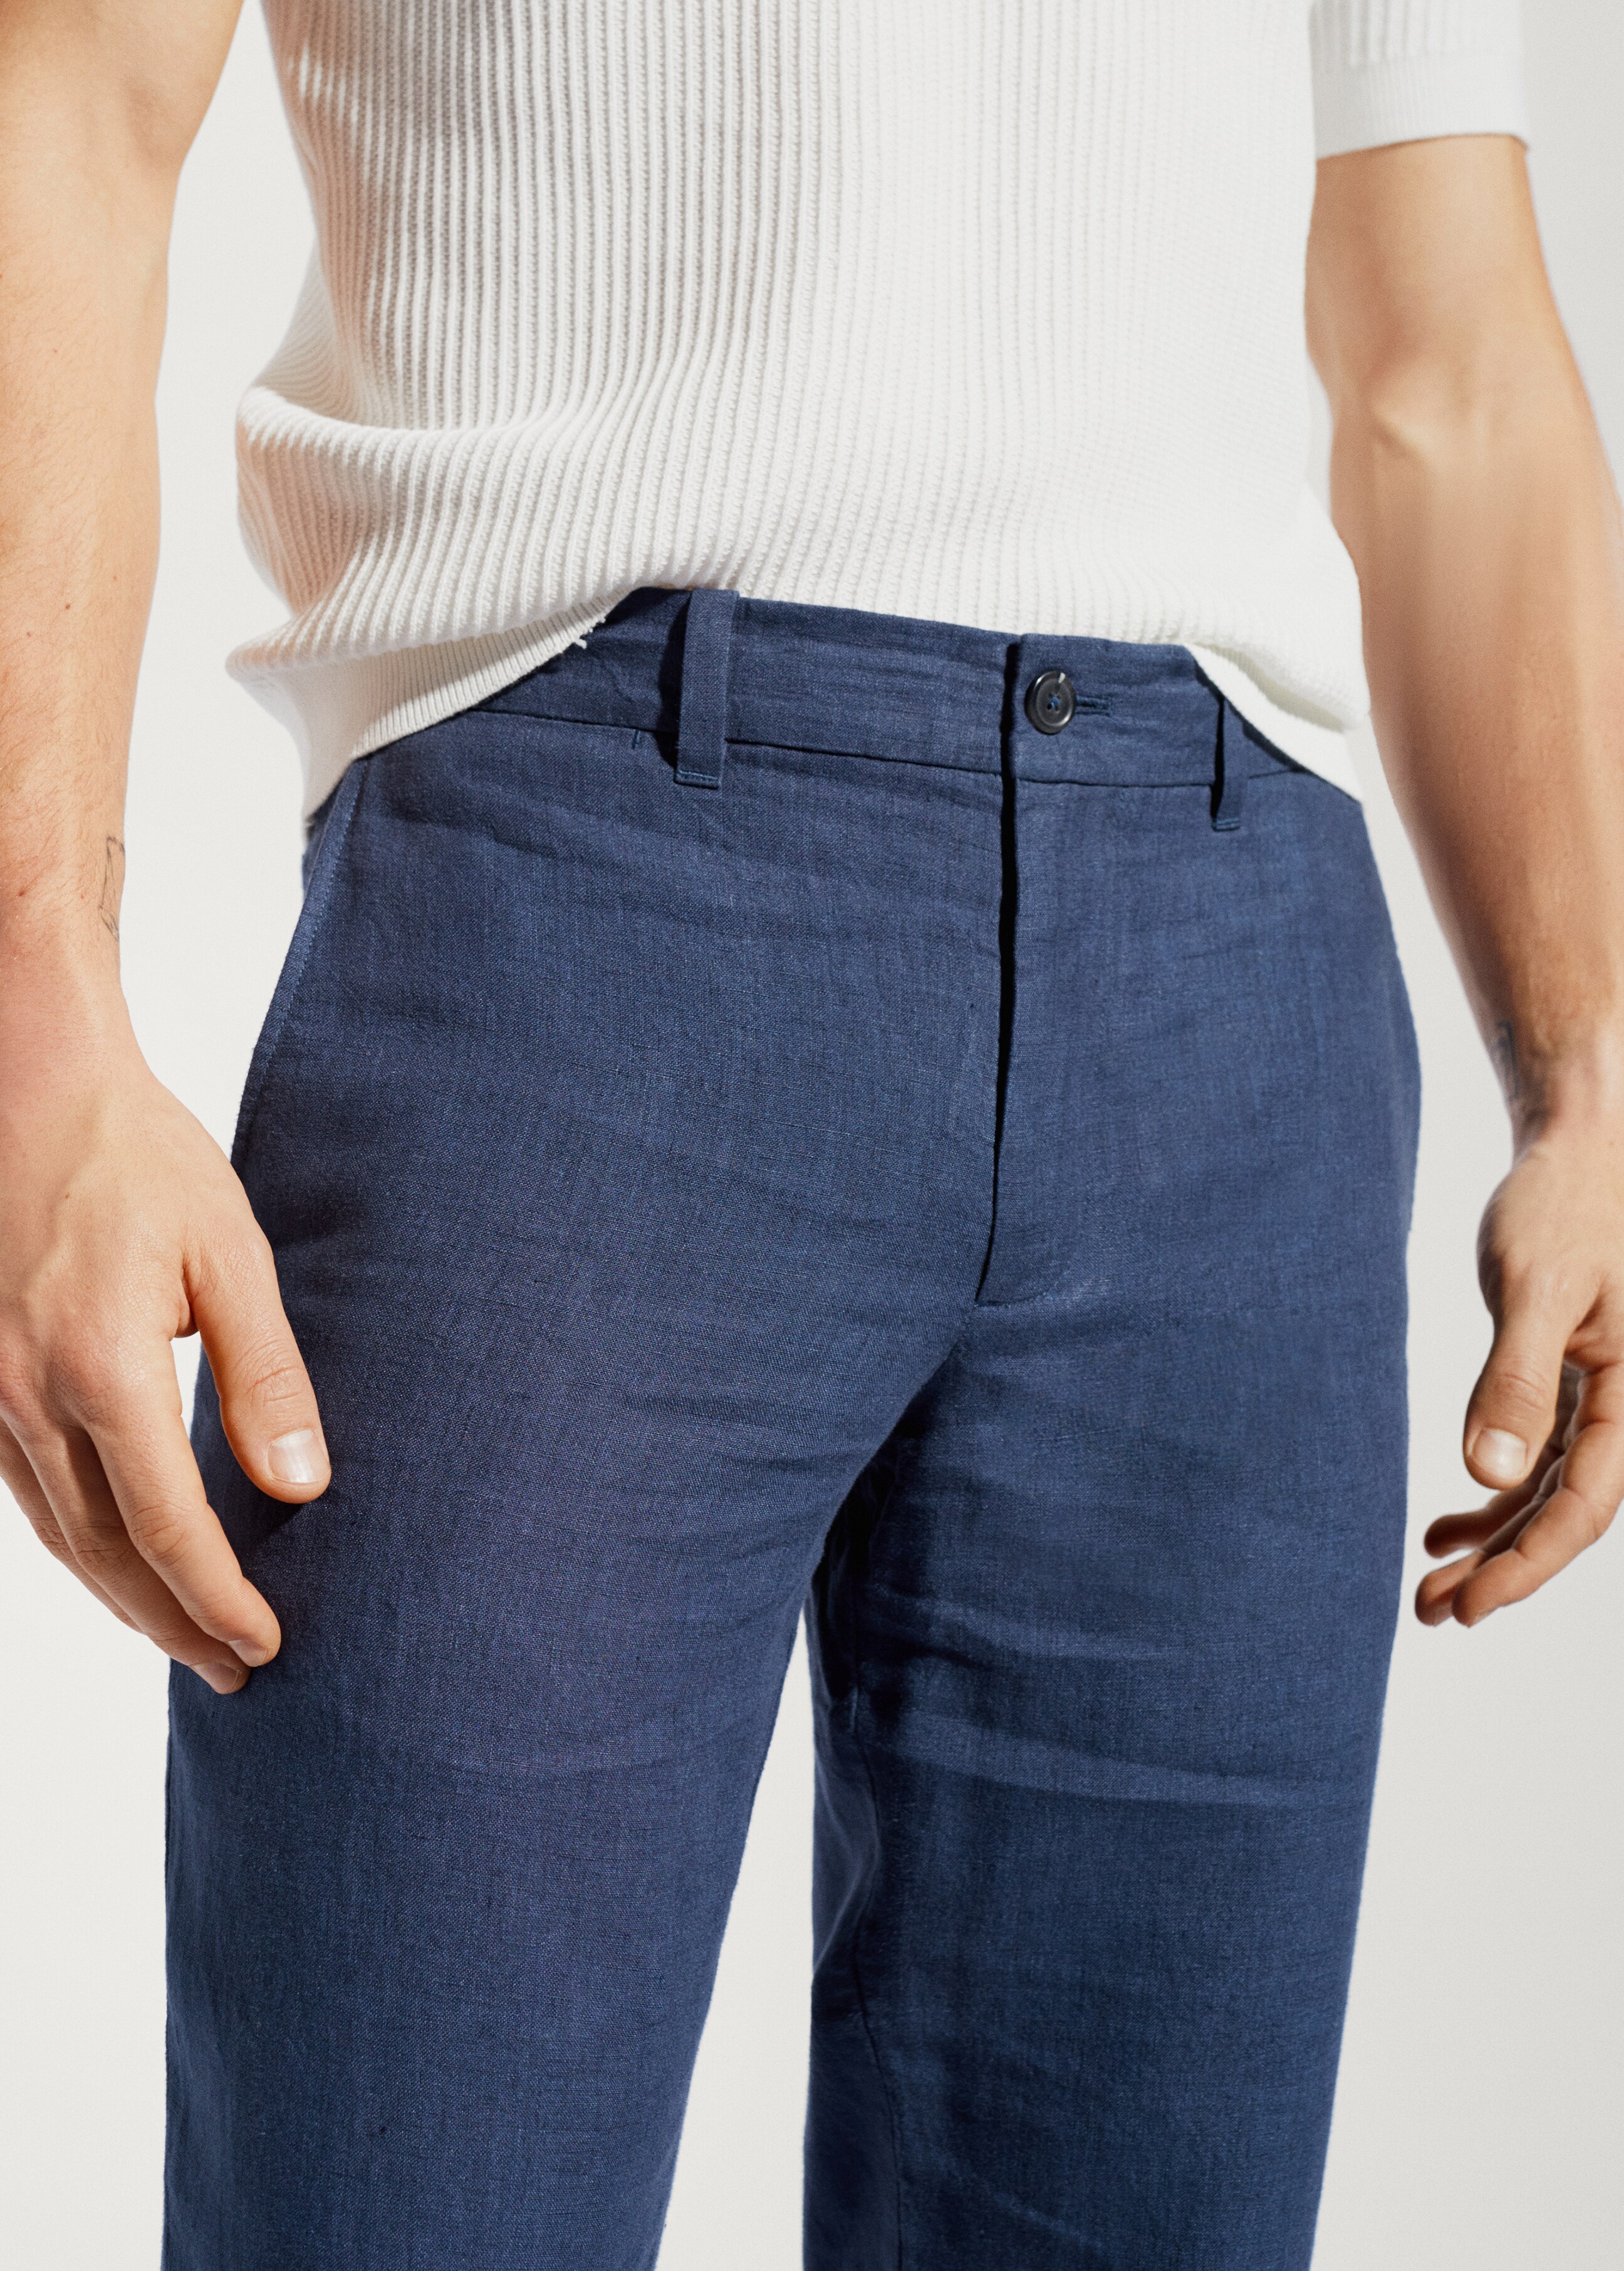 Pantalons 100% lli slim fit - Detall de l'article 1